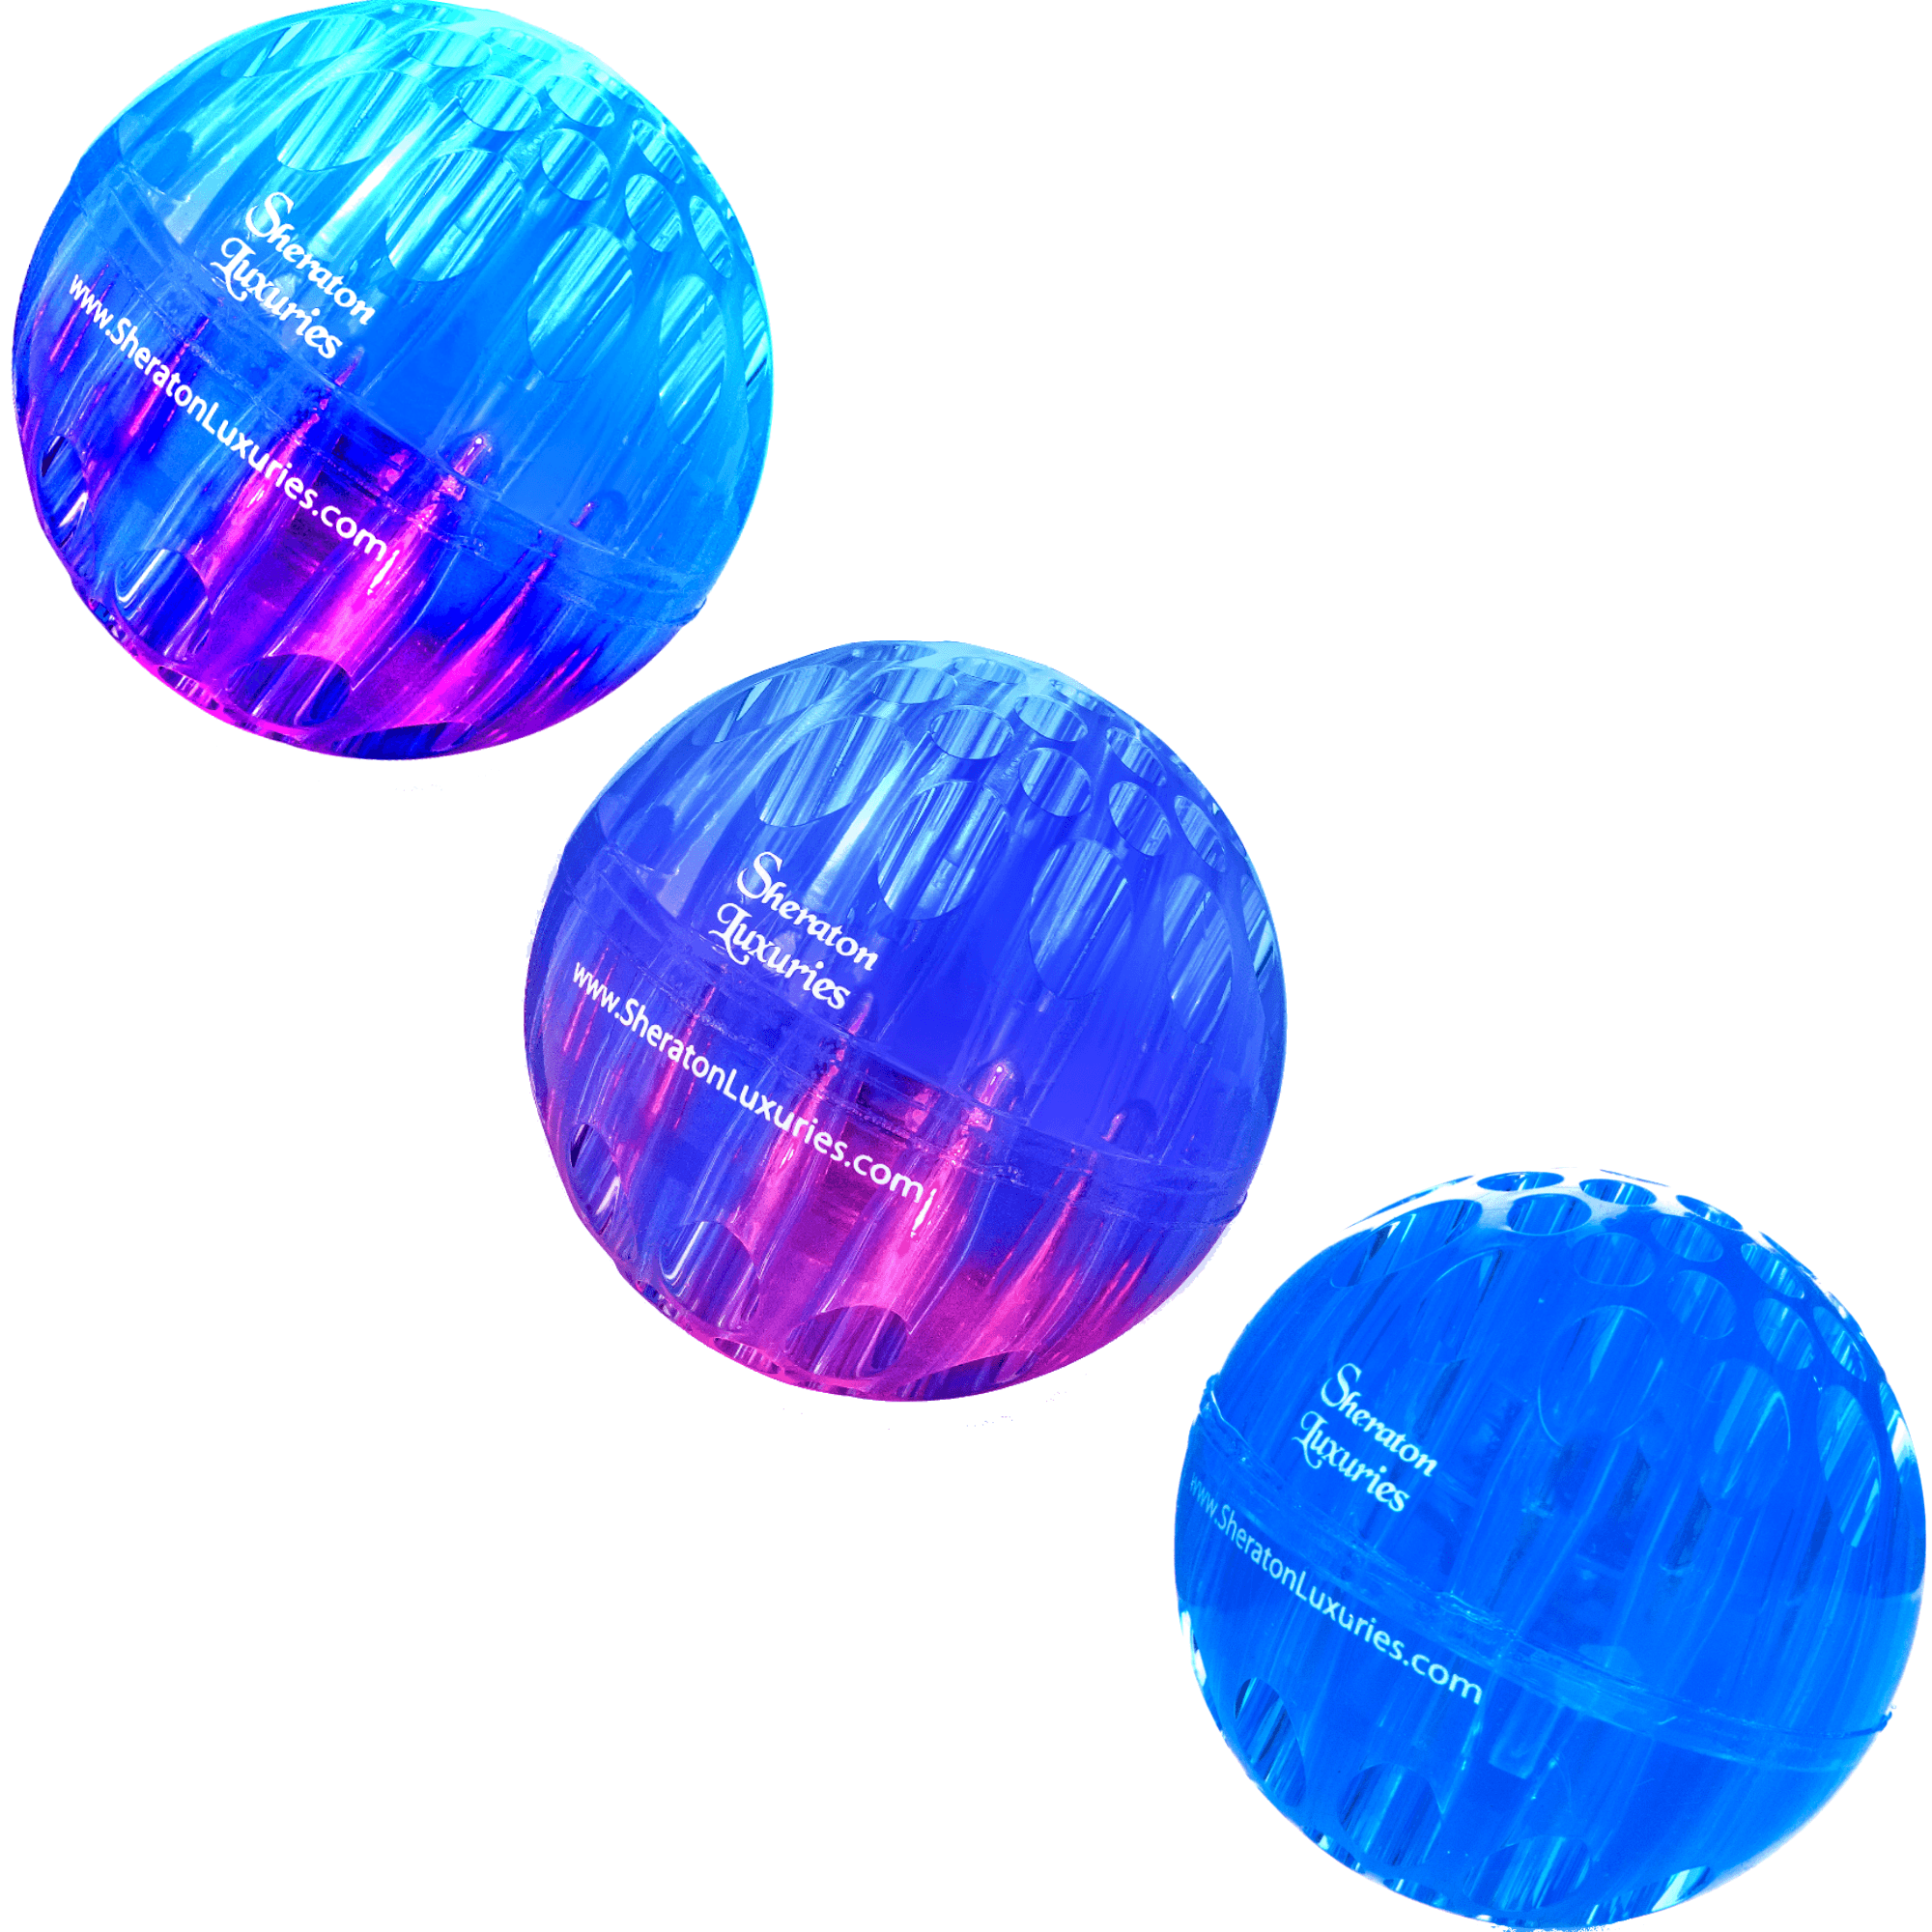 Светящийся резиновый мячик. Резиновые мячики для кошек. Флуоресцентный резиновый мяч. Двухцветный резиновый мяч.